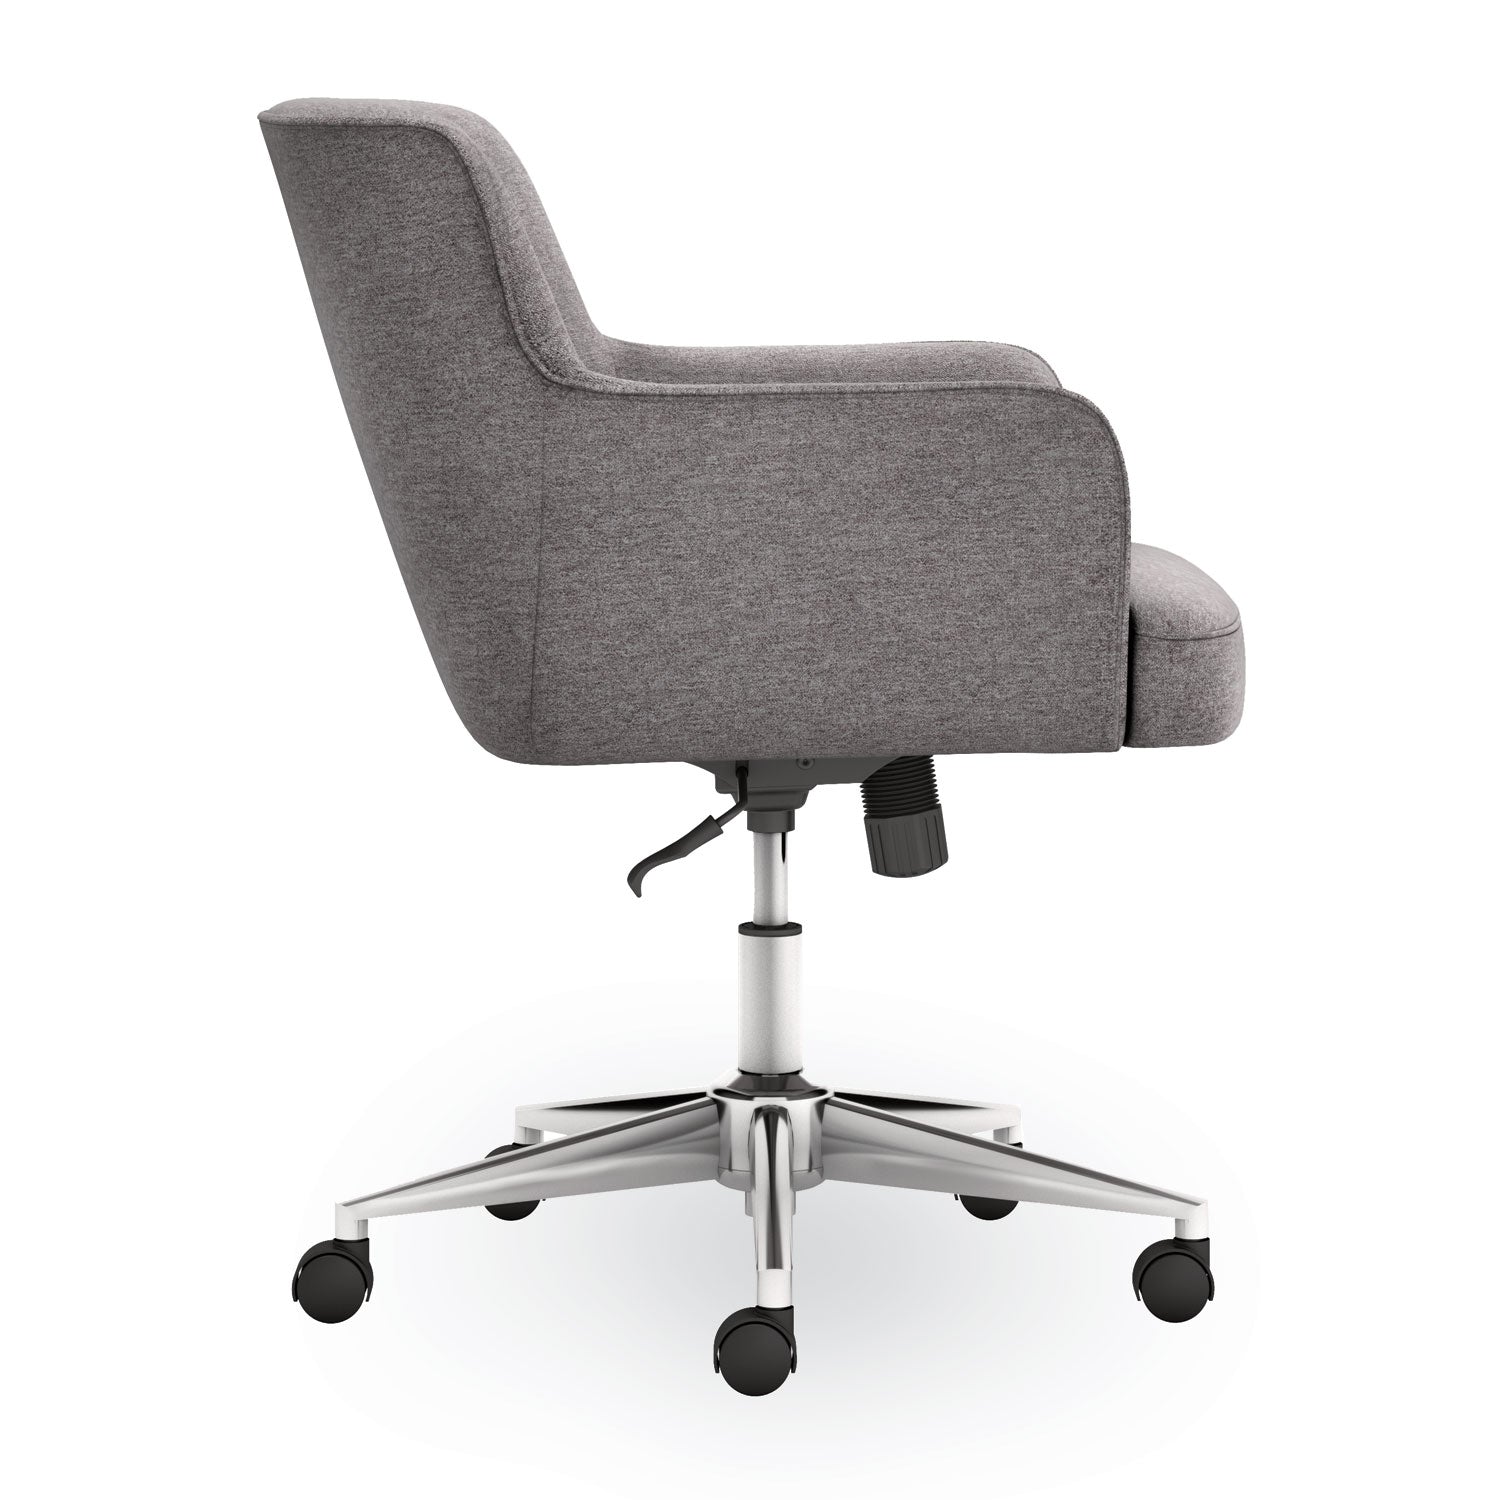 matter-multipurpose-chair-23-x-248-x-34-light-gray-seat-light-gray-back-chrome-base-ships-in-7-10-business-days_honvl232gry01 - 3